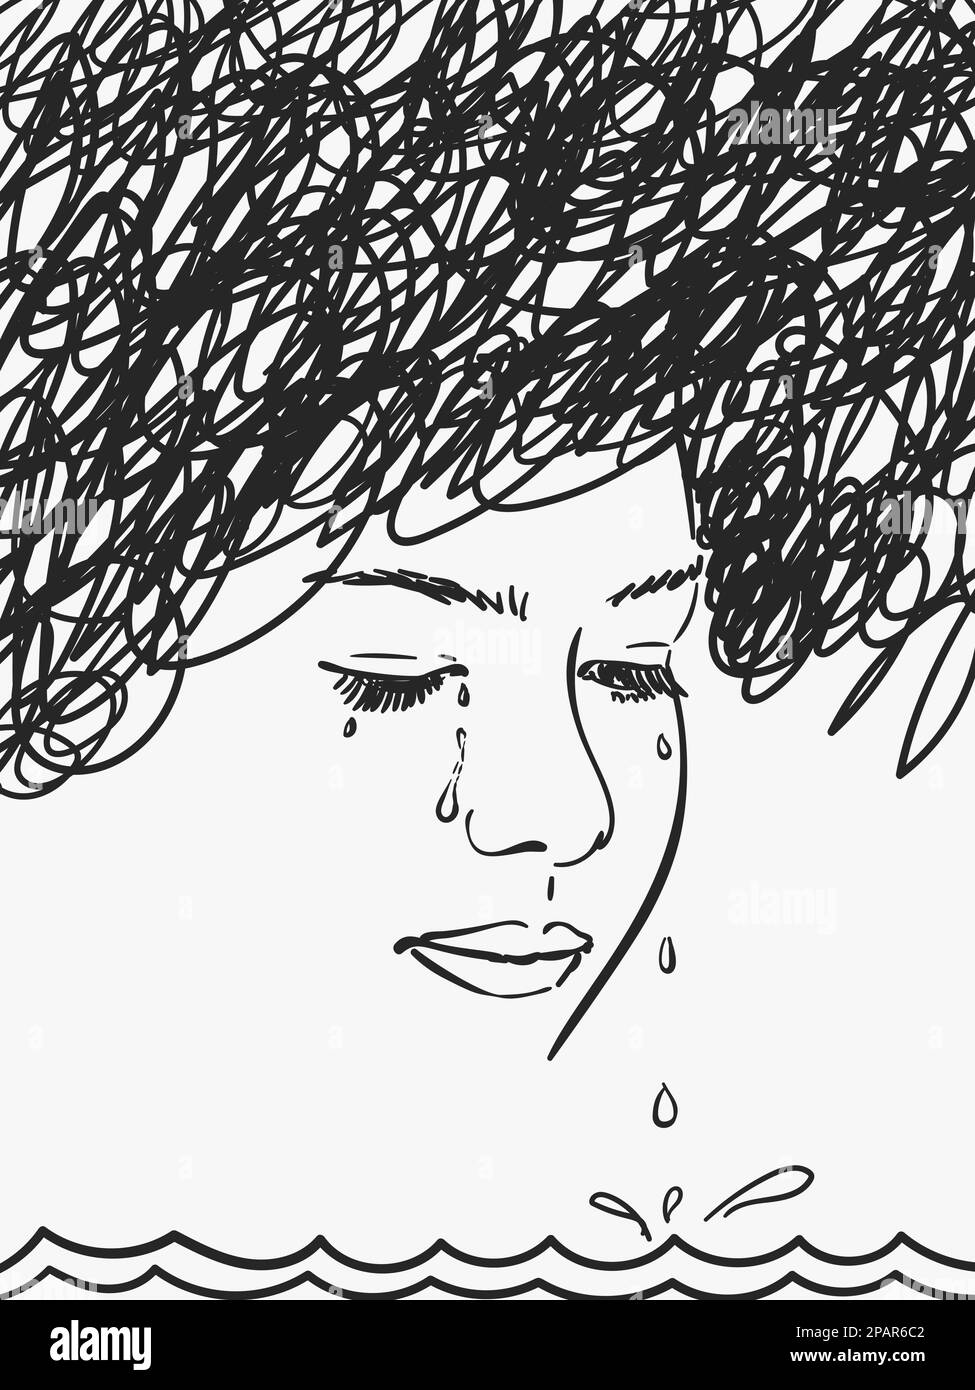 Mare di lacrime che sgocciolano dagli occhi di una giovane depressa con nuvola nera sulla testa, schizzo vettoriale, illustrazione disegnata a mano Illustrazione Vettoriale